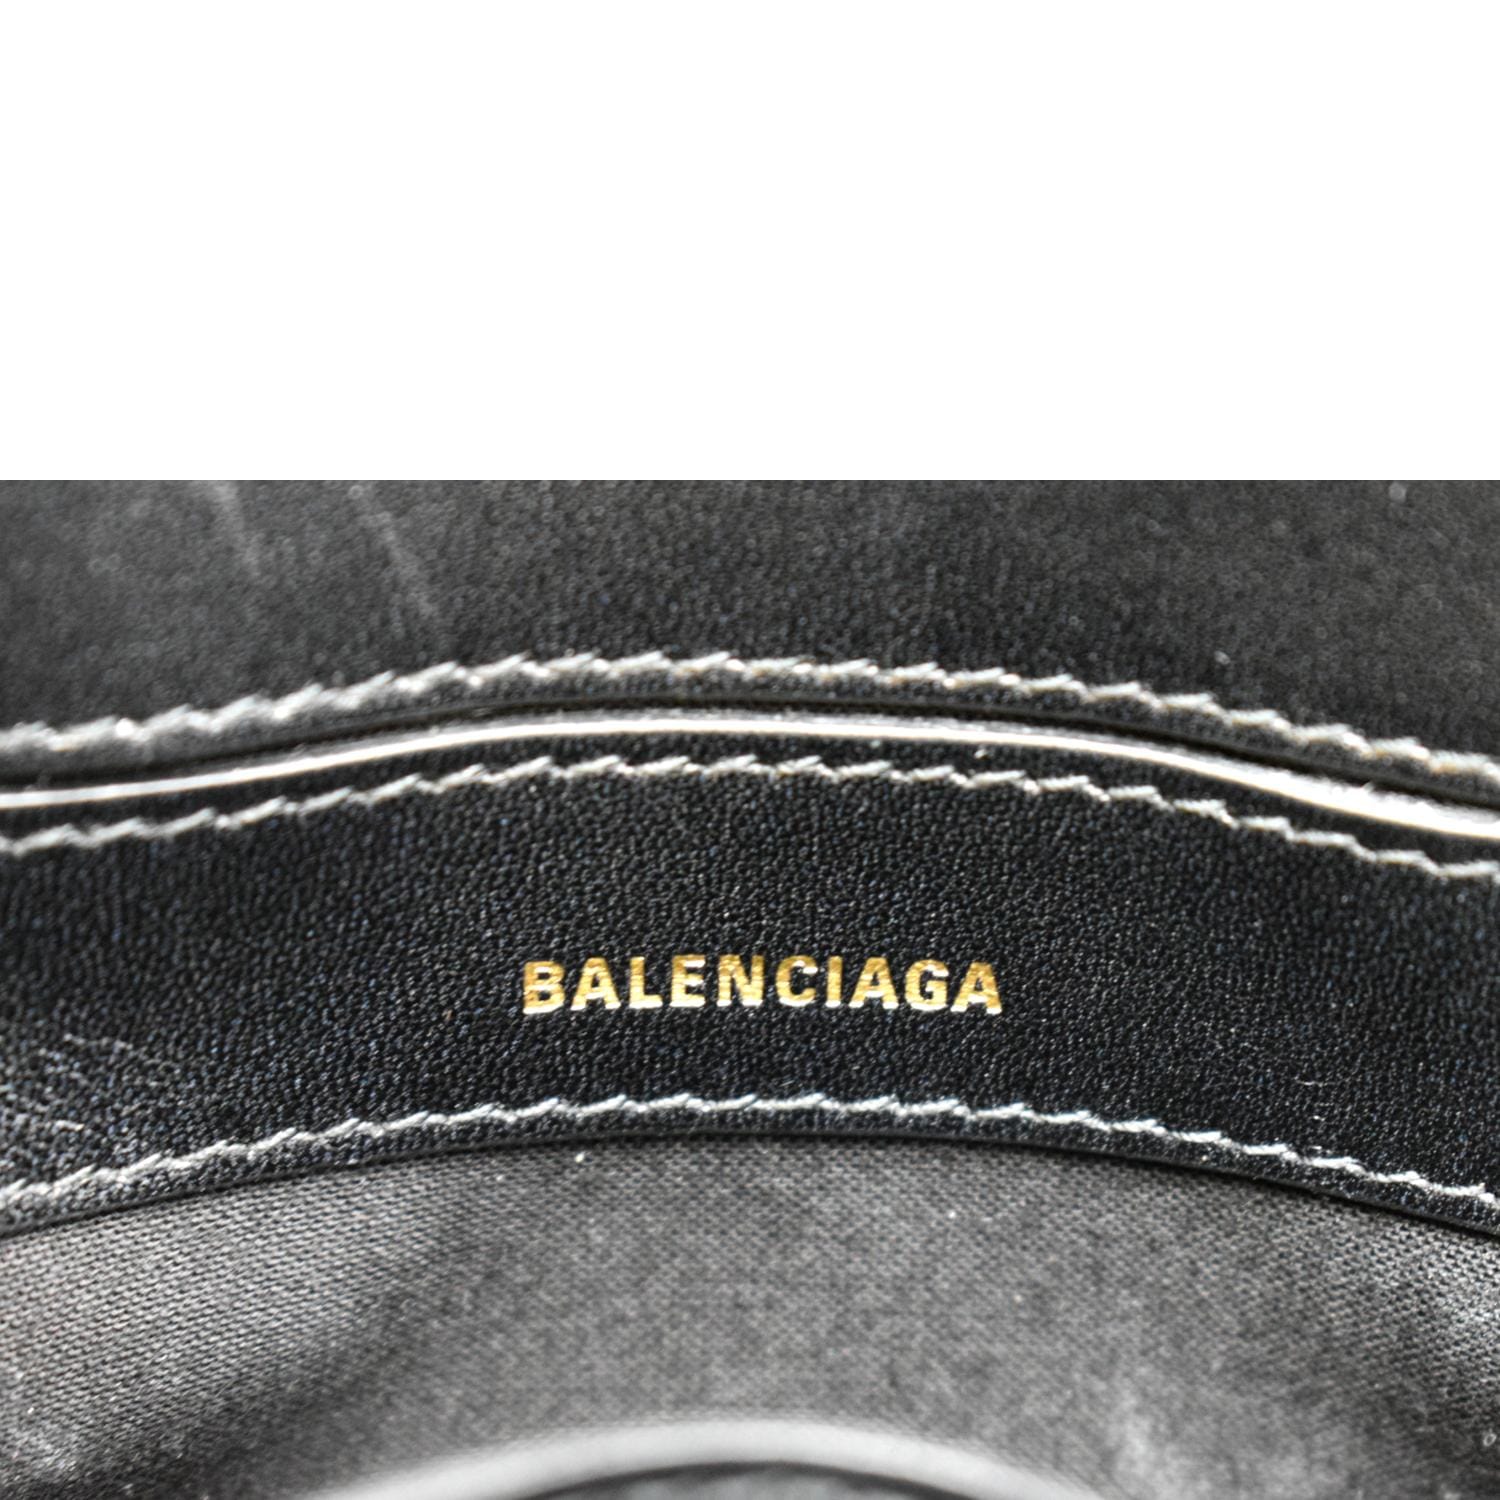 Balenciaga Ville Xxs Leather Top Handle Bag in Black